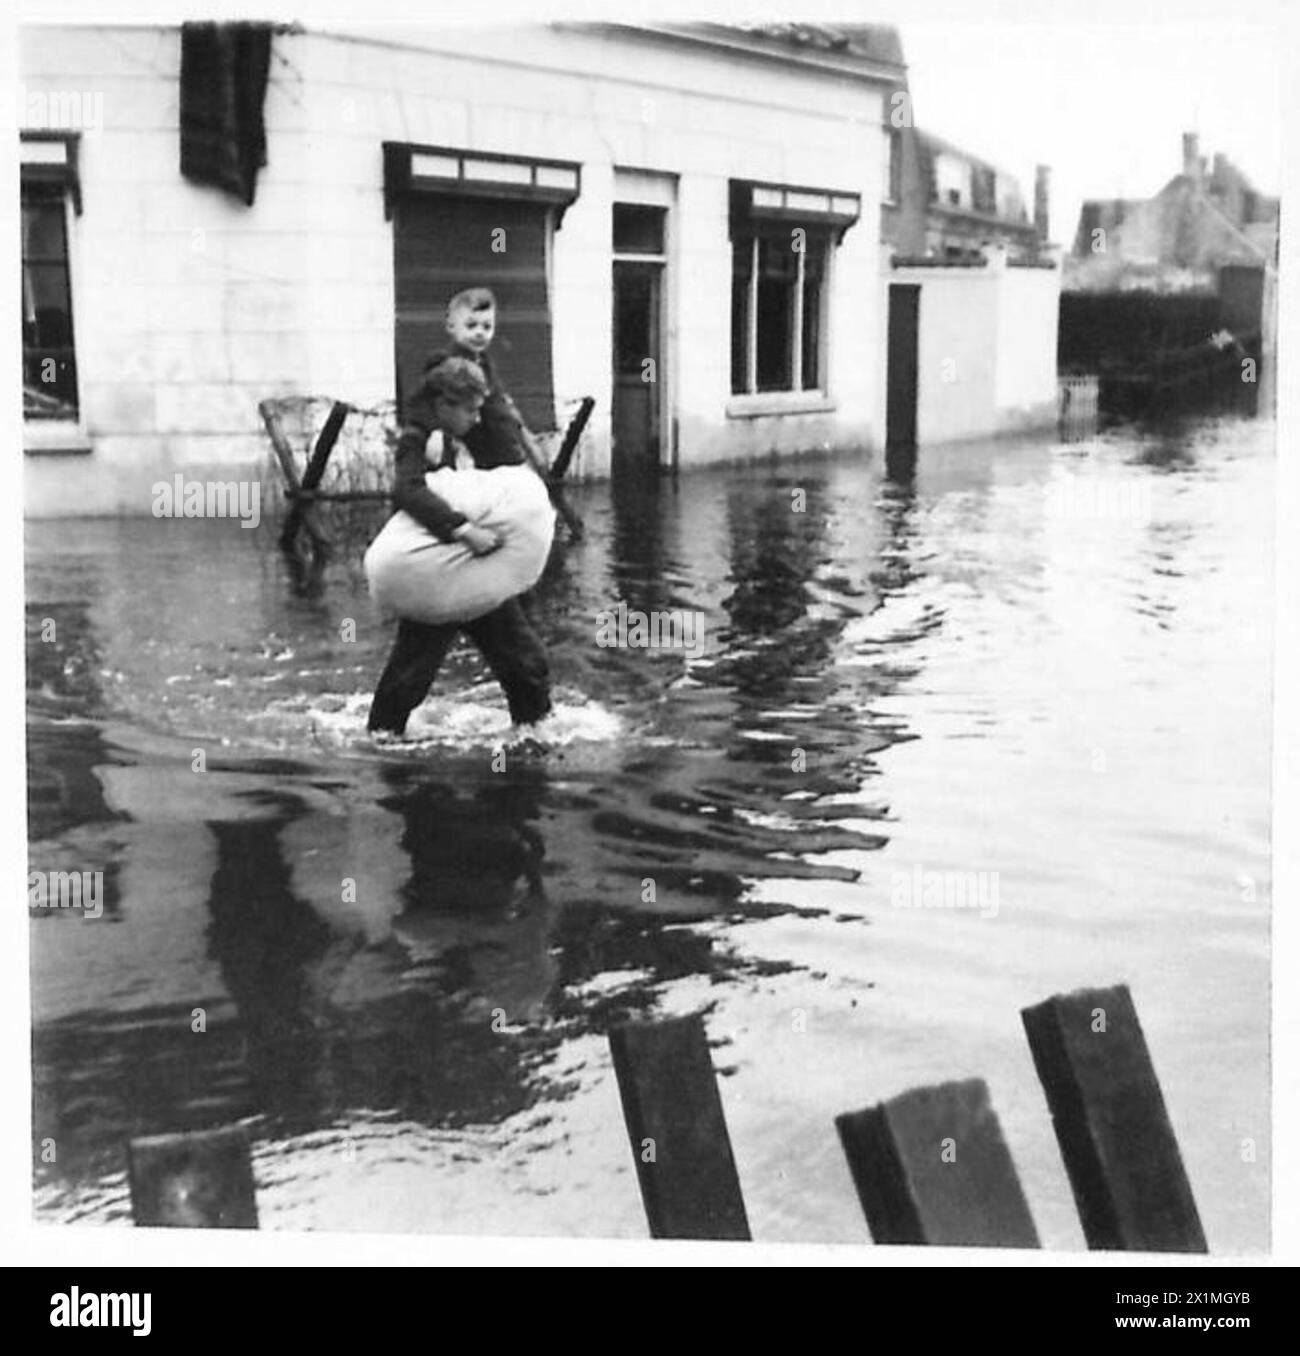 L'ÎLE INONDÉE DE WALCHEREN - où l'eau n'est pas trop garder, les gens peuvent patauger, et un enfant est vu être transporté à travers les inondations, British Army, 21st Army Group Banque D'Images